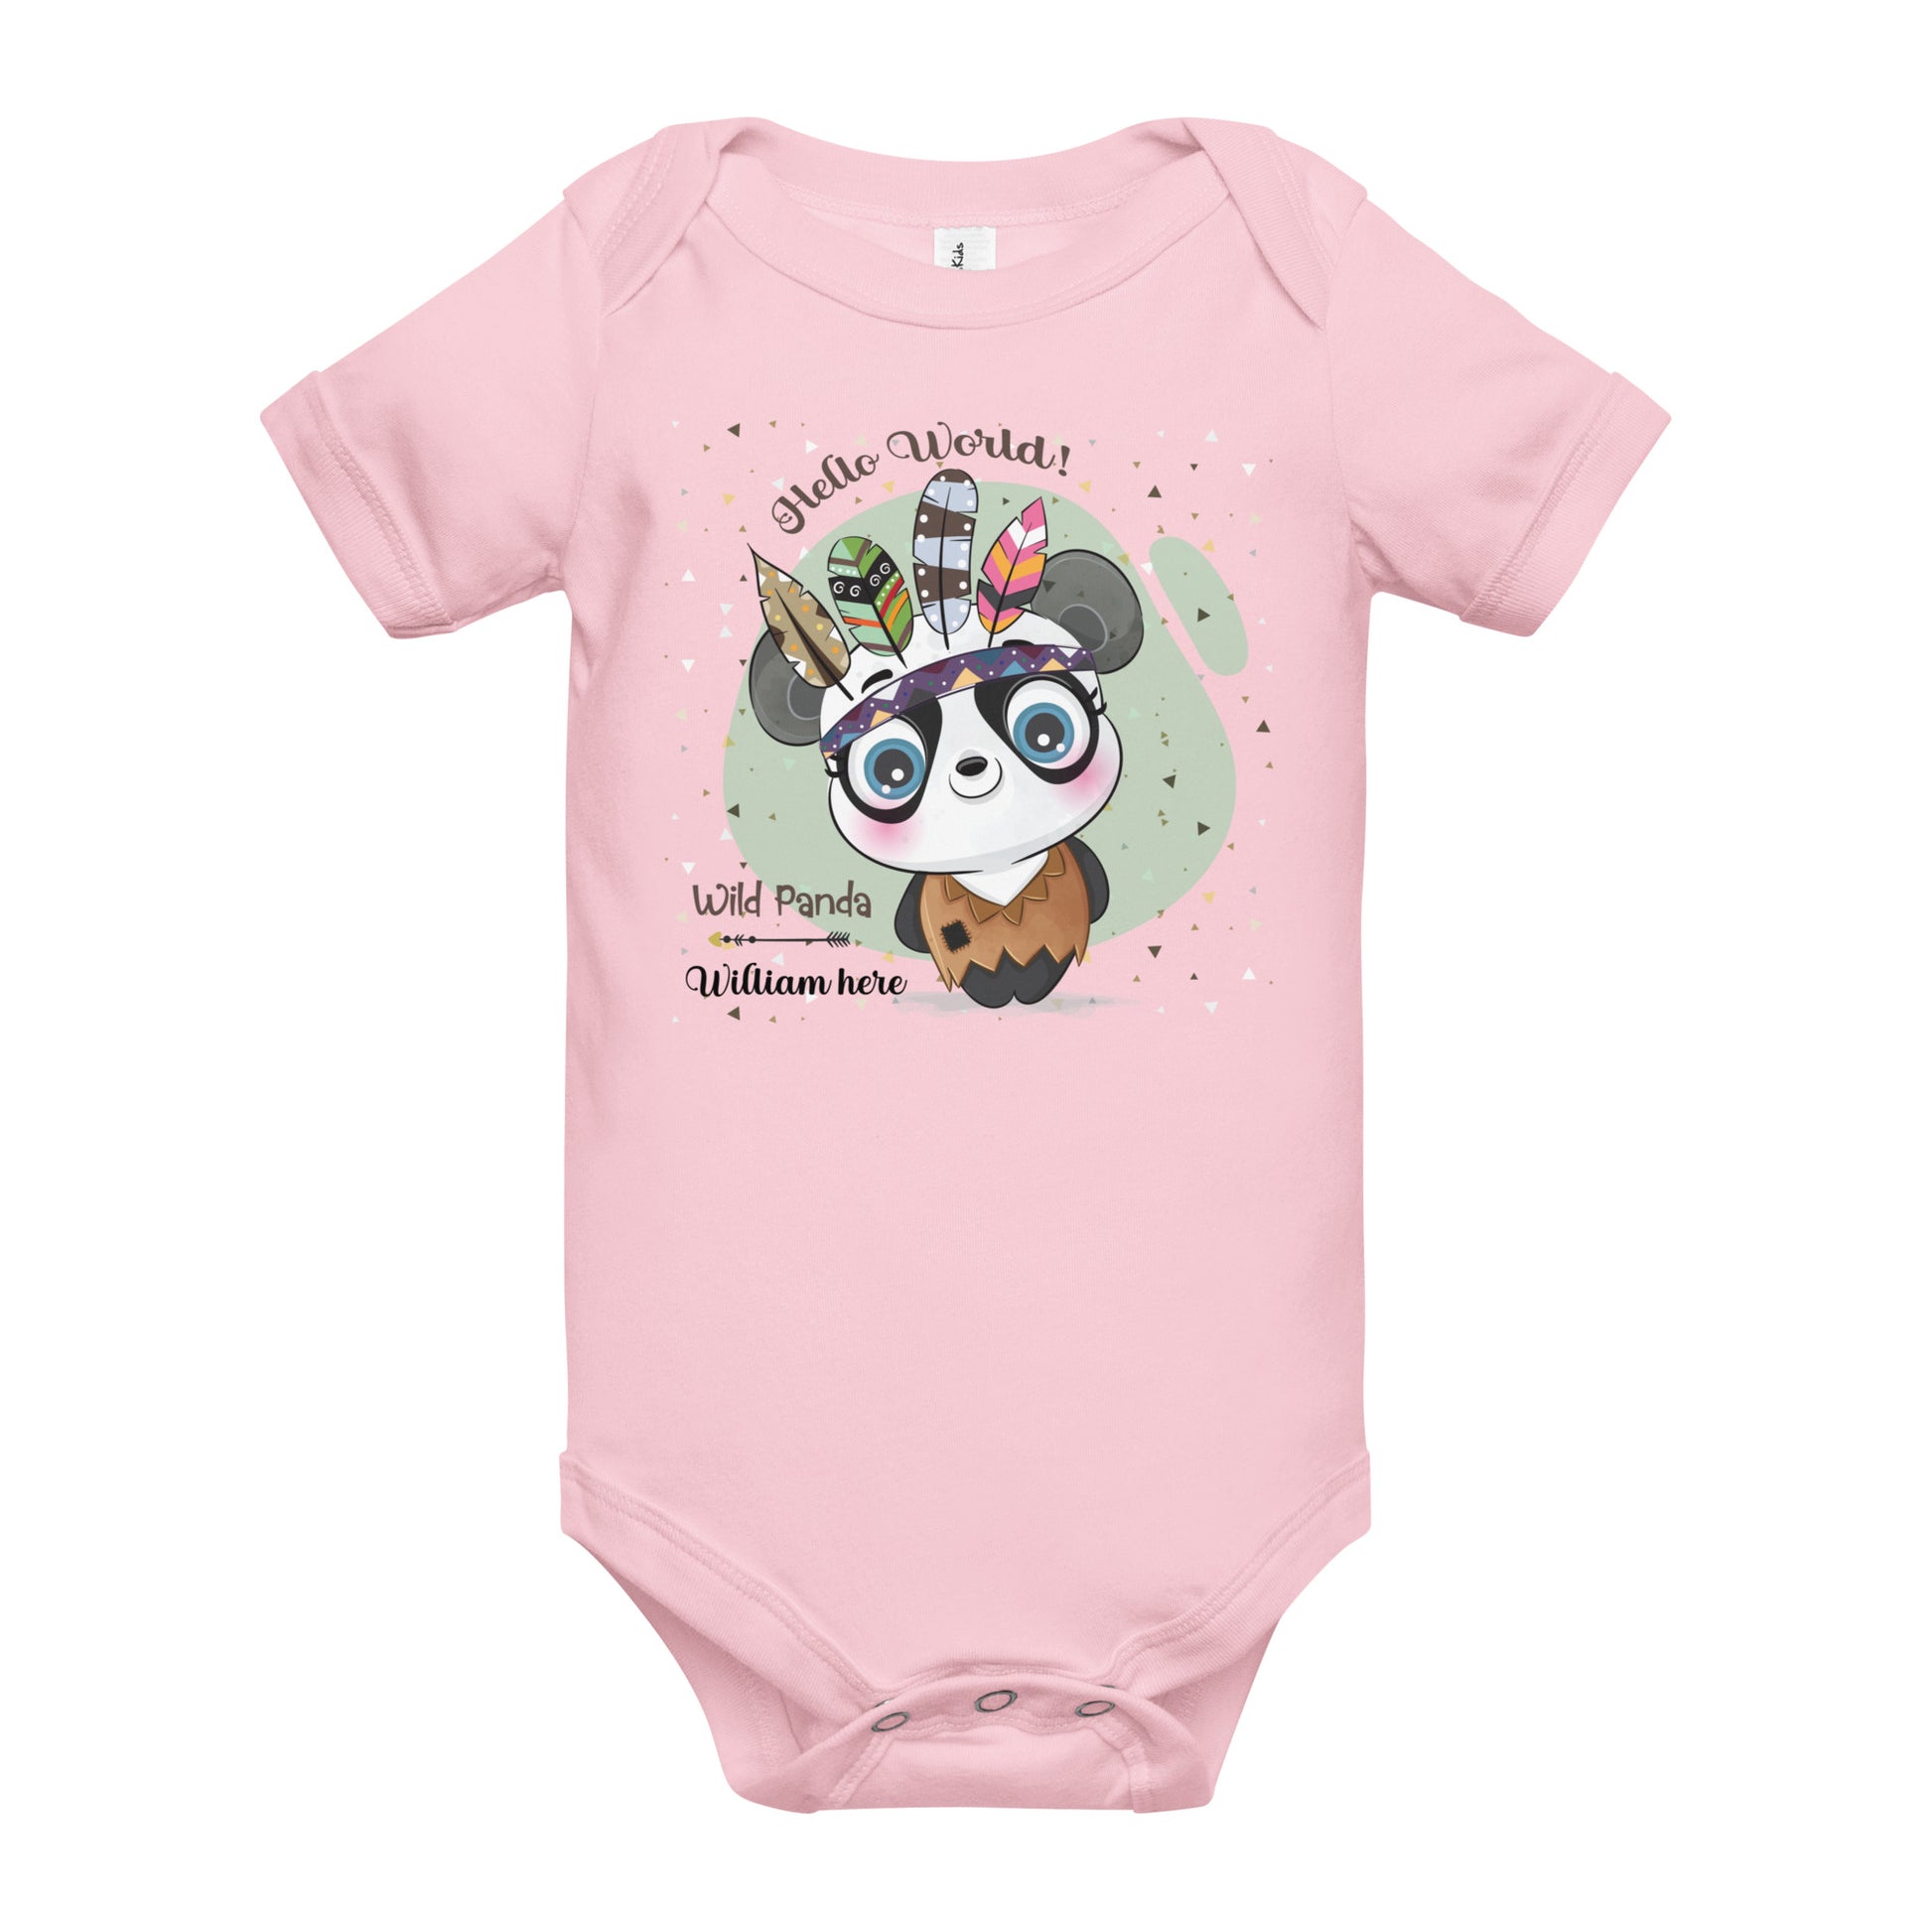 Personalised Bio for New Baby, Hello World! Wild Panda